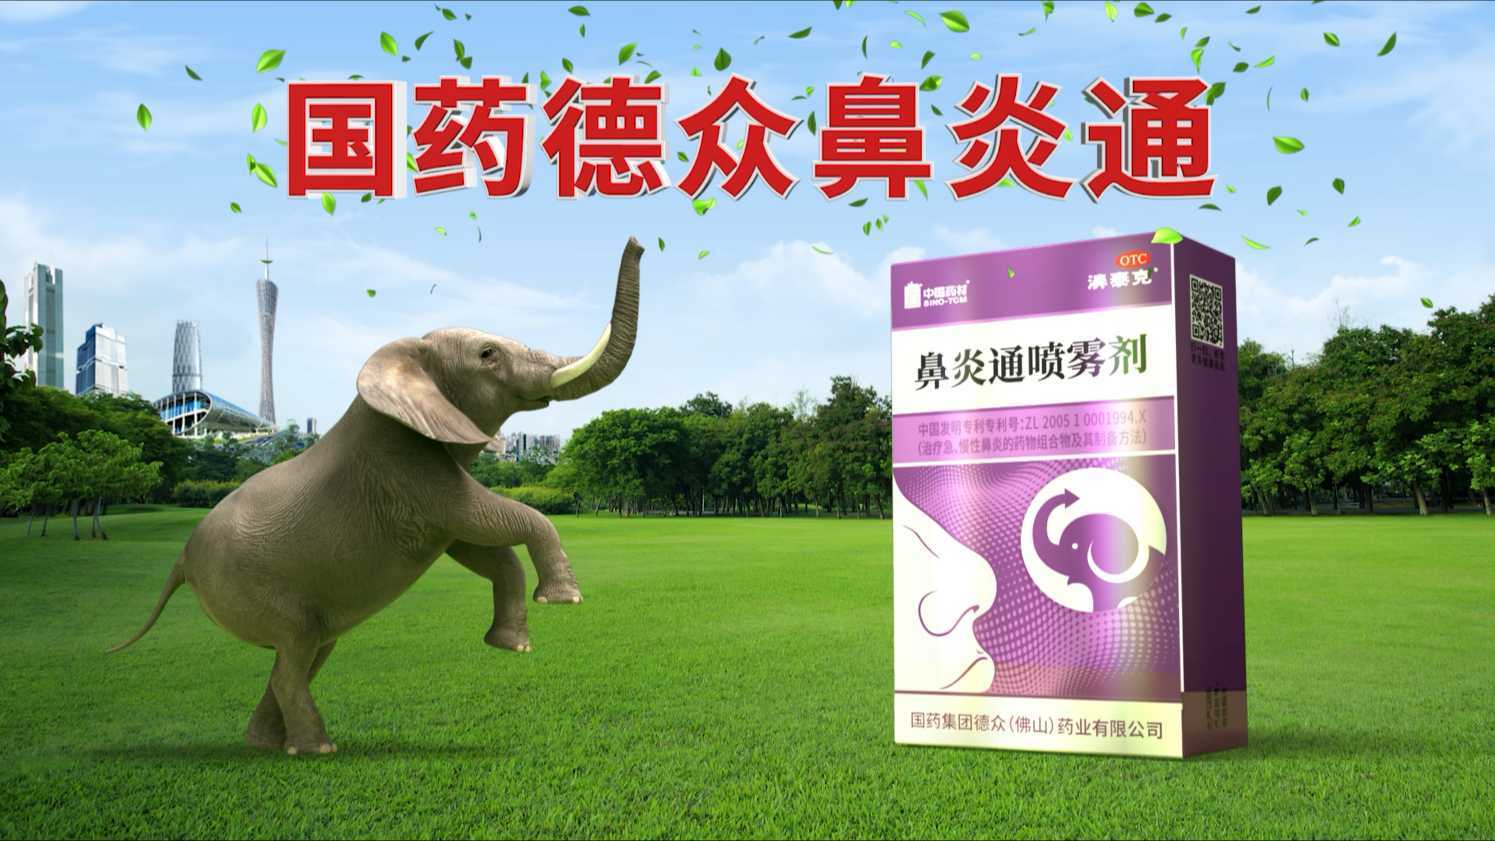 狮子座广告作品——国药德众鼻炎通神广告篇30s